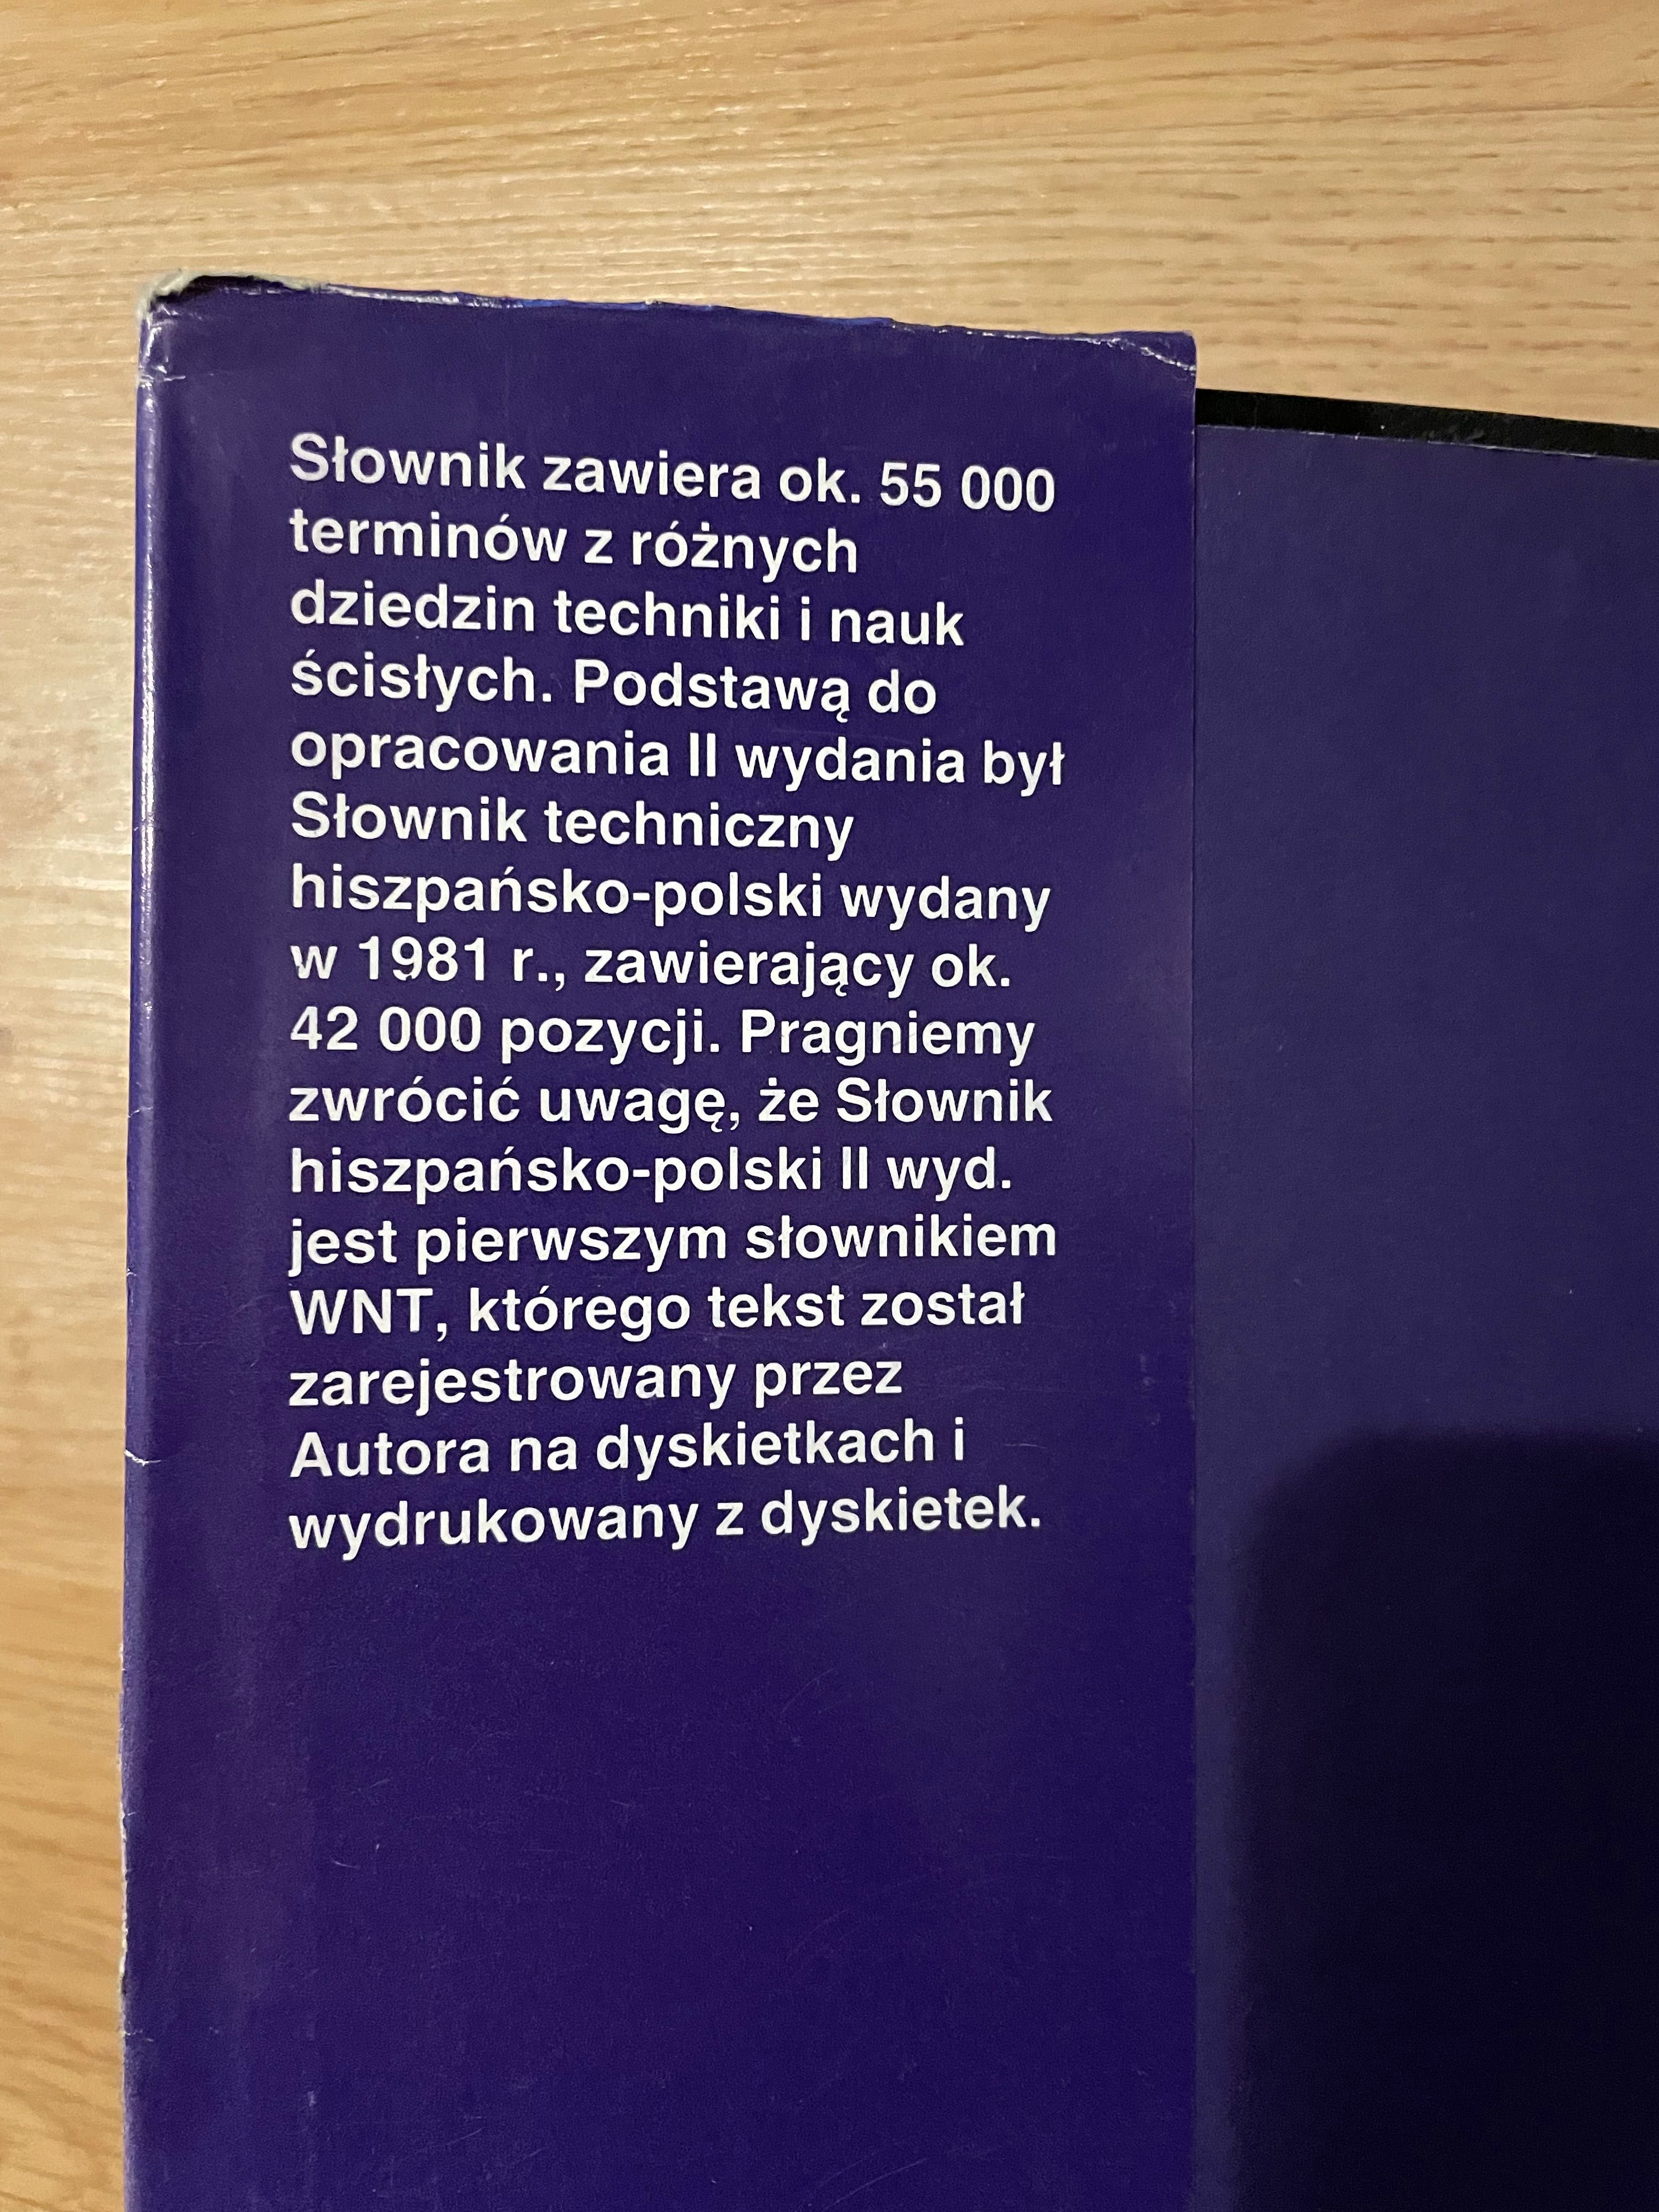 Słownik techniczny hiszpańsko- polski